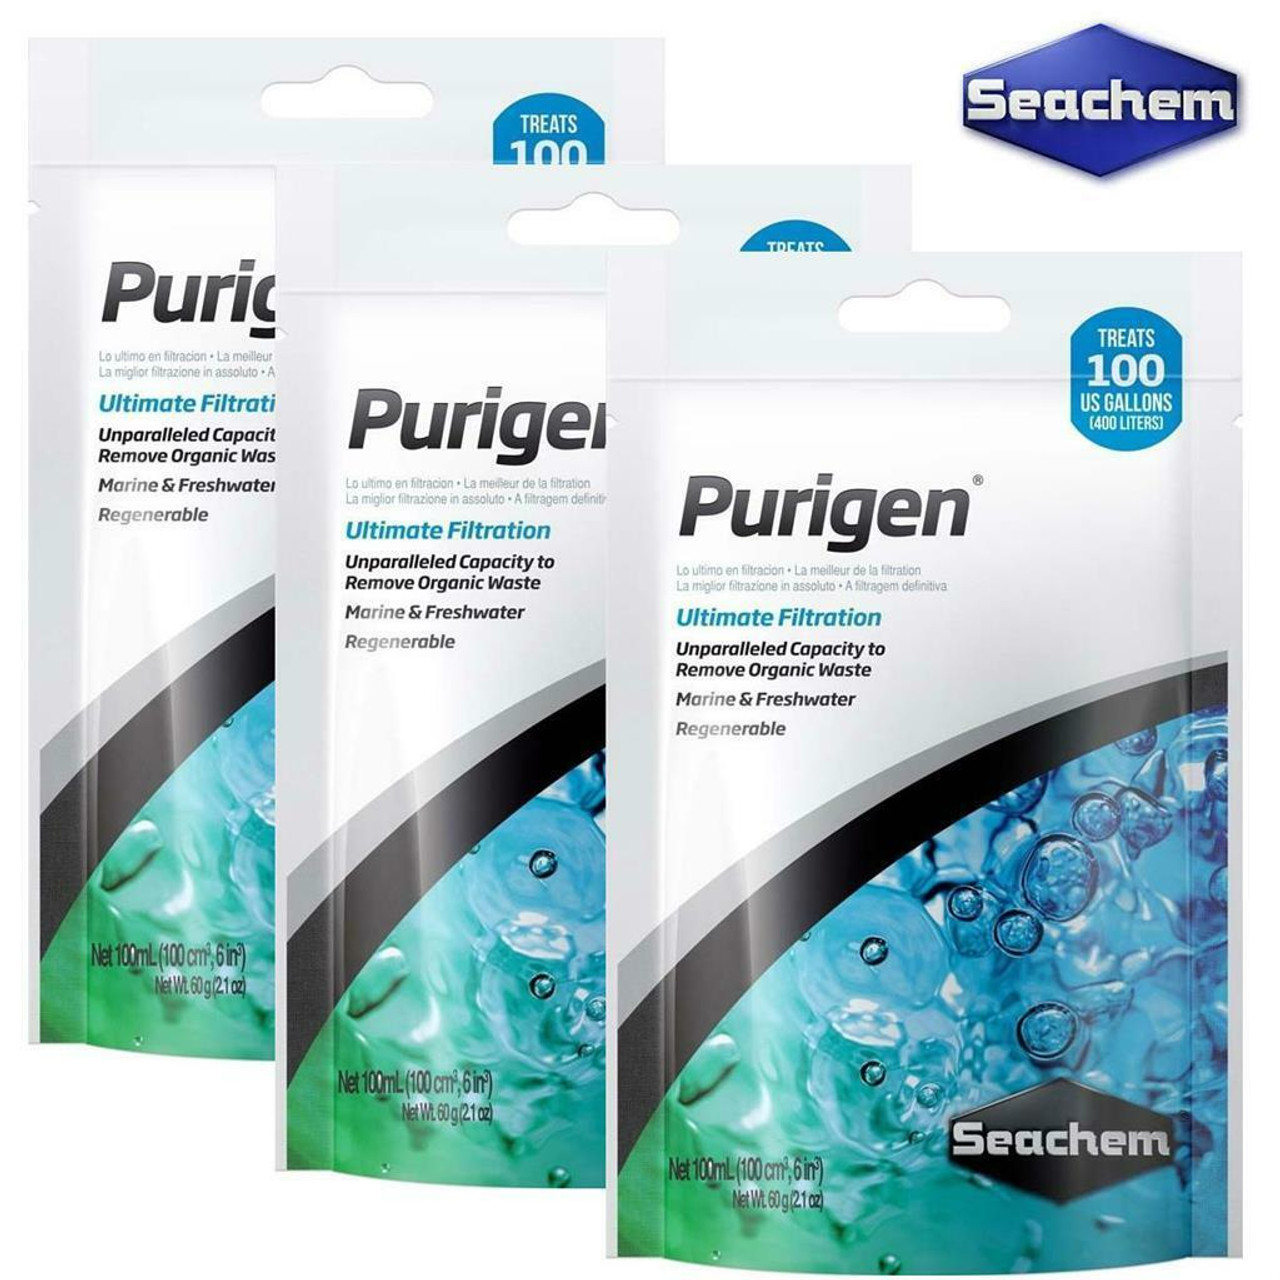 Purigen, 100 ml (in a bag)